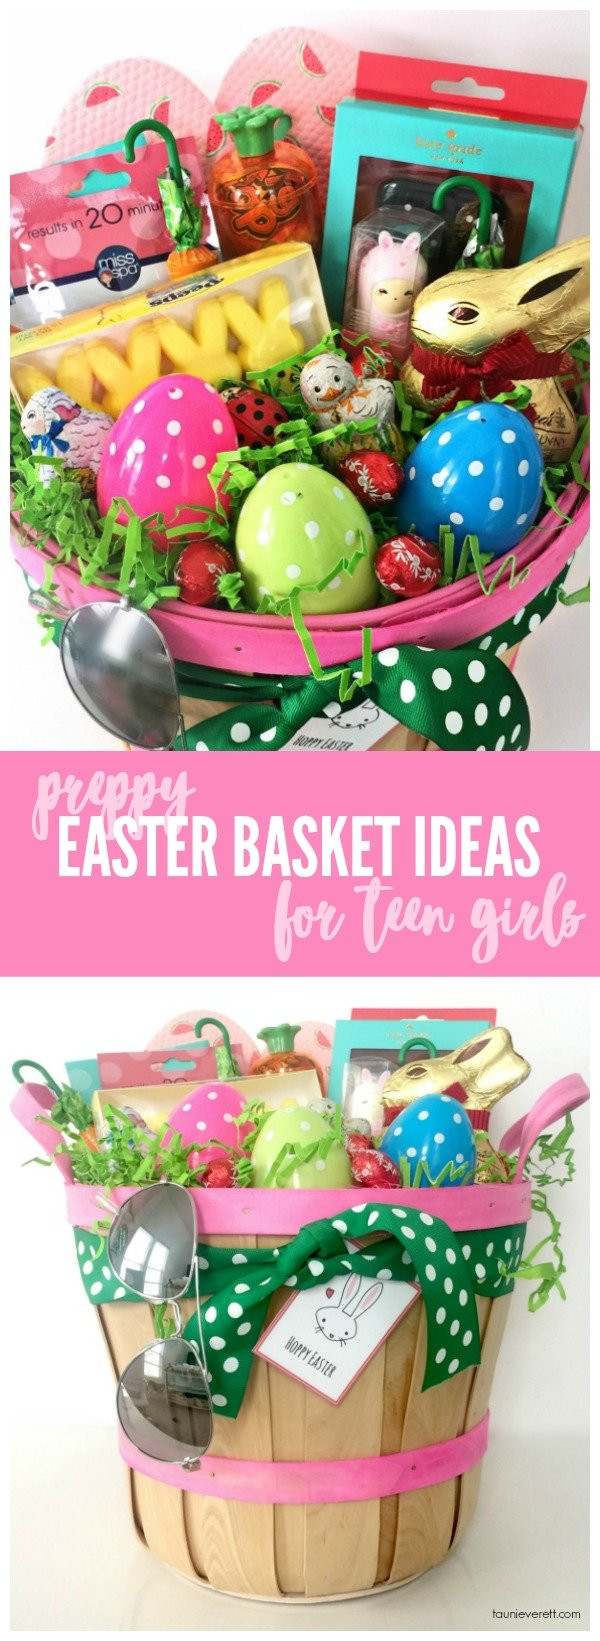 Easter Gift Ideas For Teenage Girl
 Preppy Easter Basket Ideas for Teen Girls